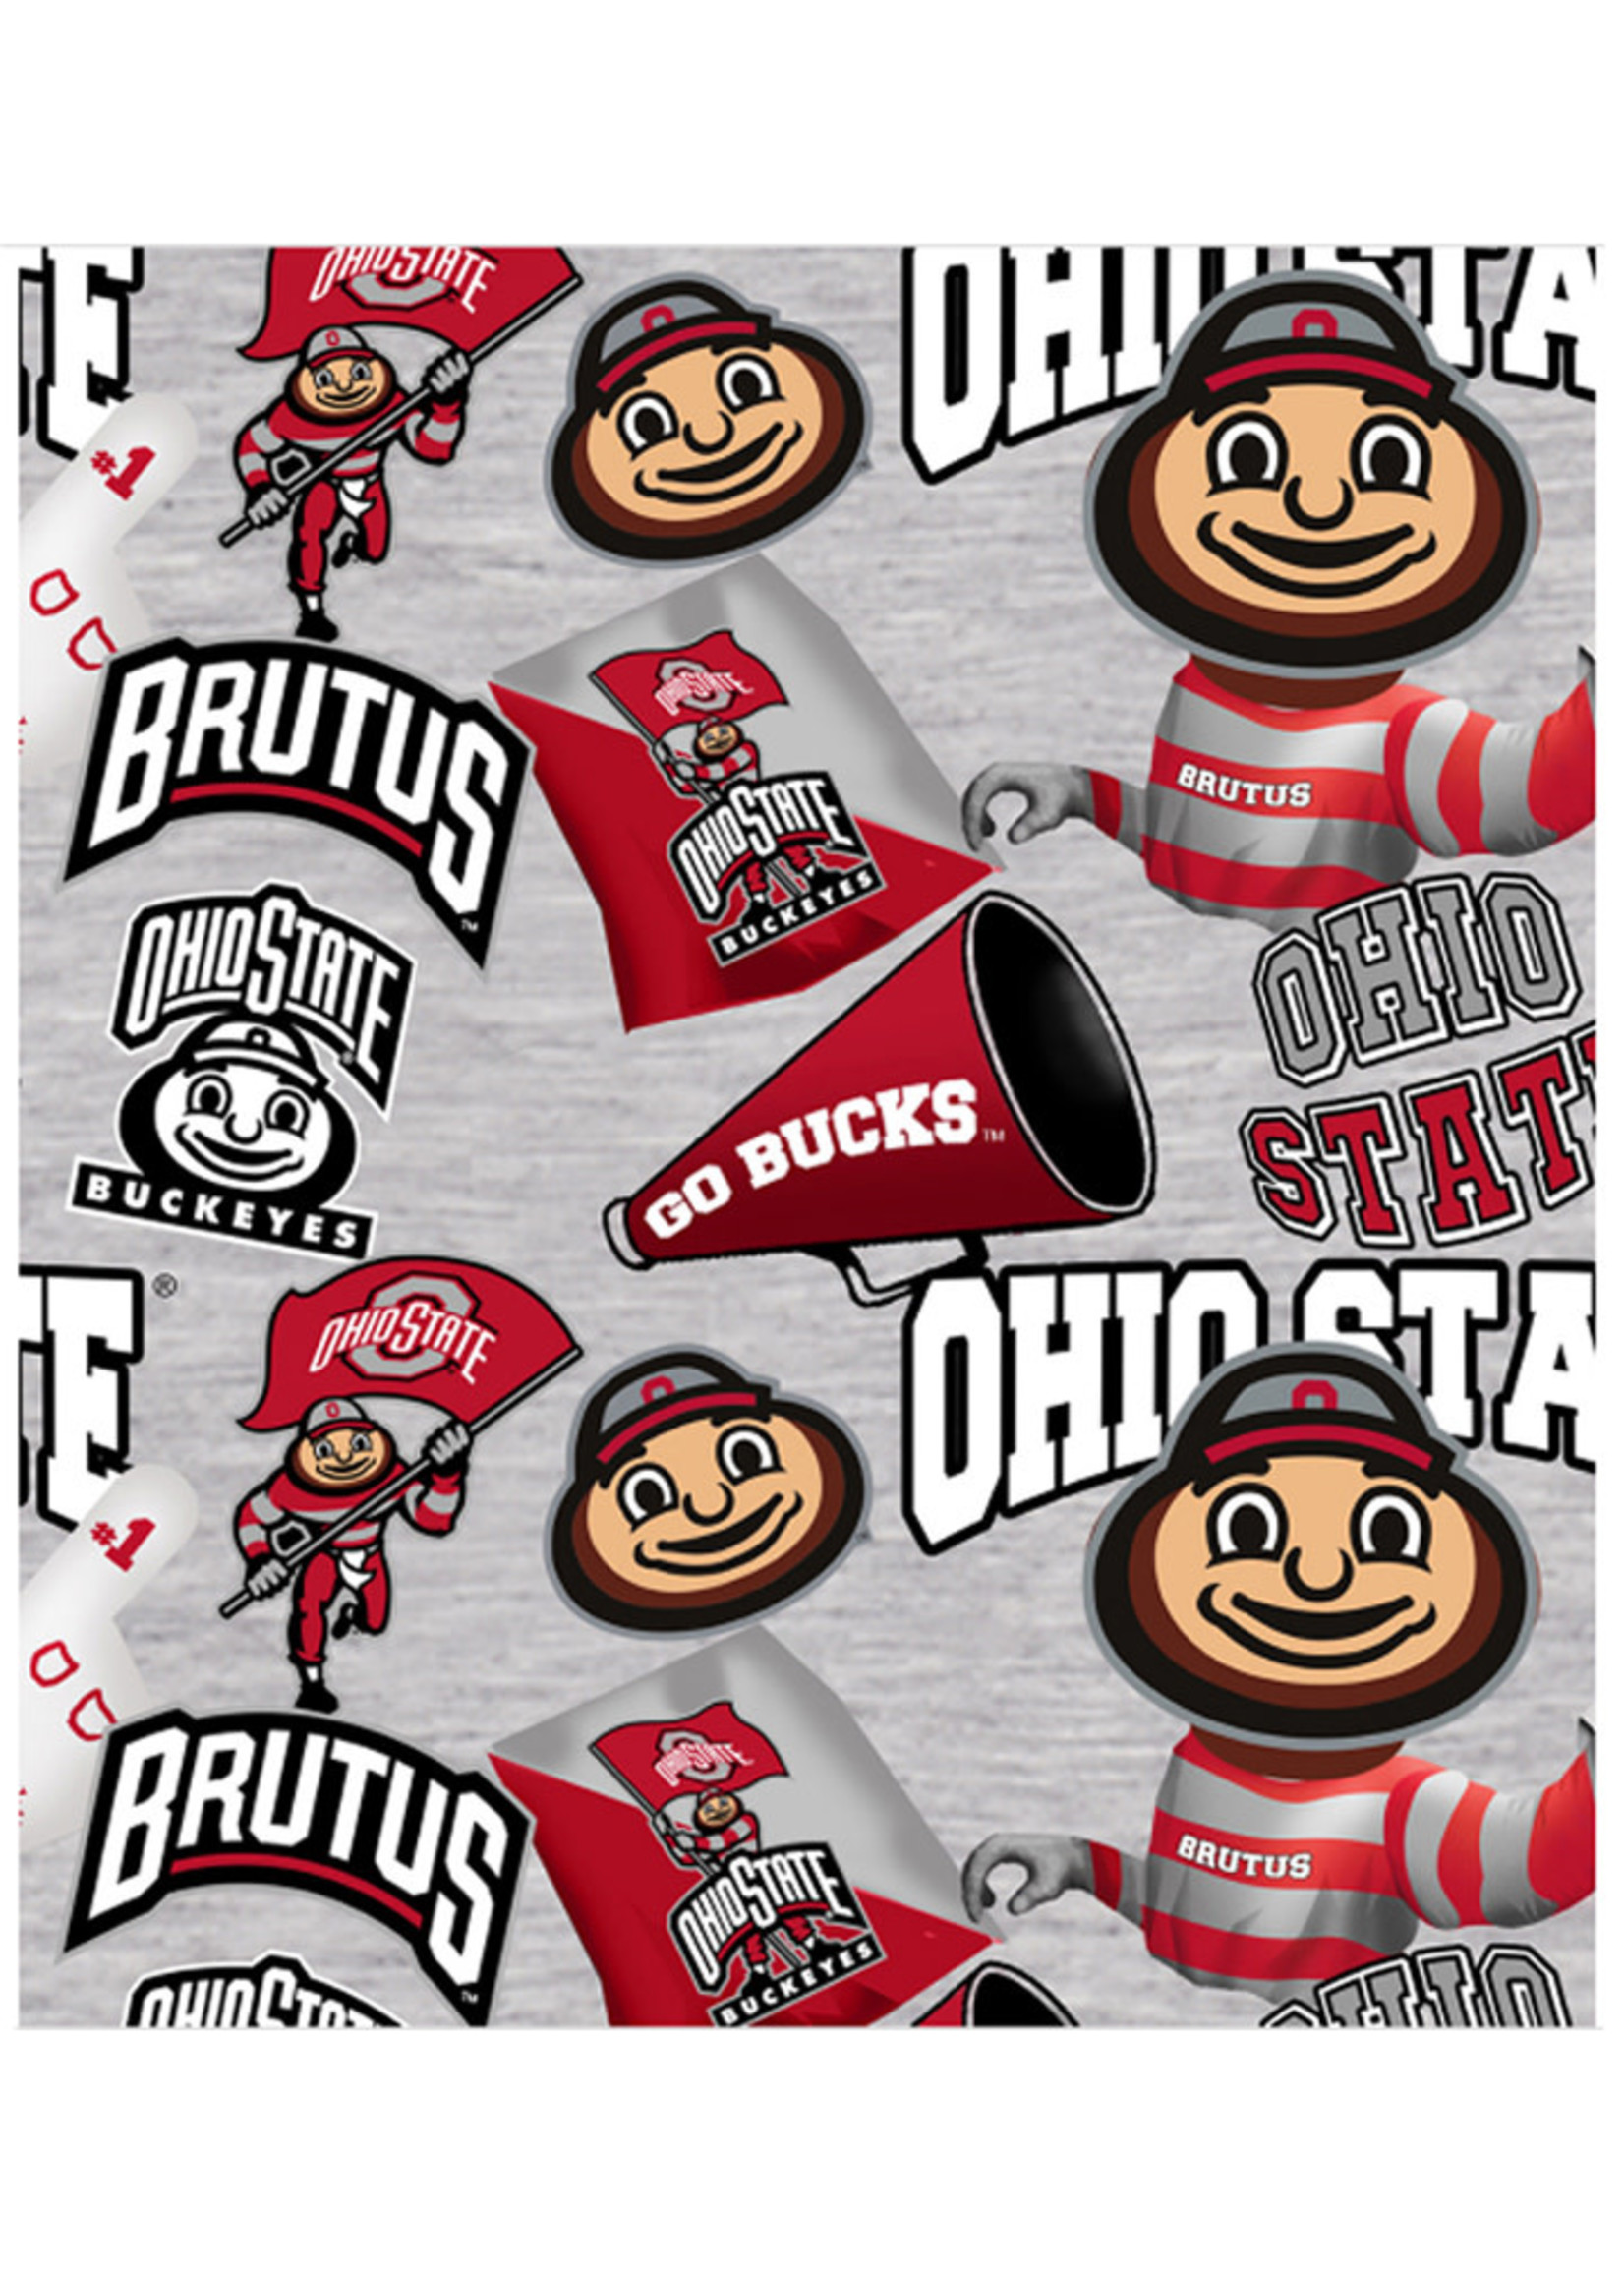 Ohio State Buckeyes Cotton Fabric Collegiate Mascot - Fat Quarter 27"x18"